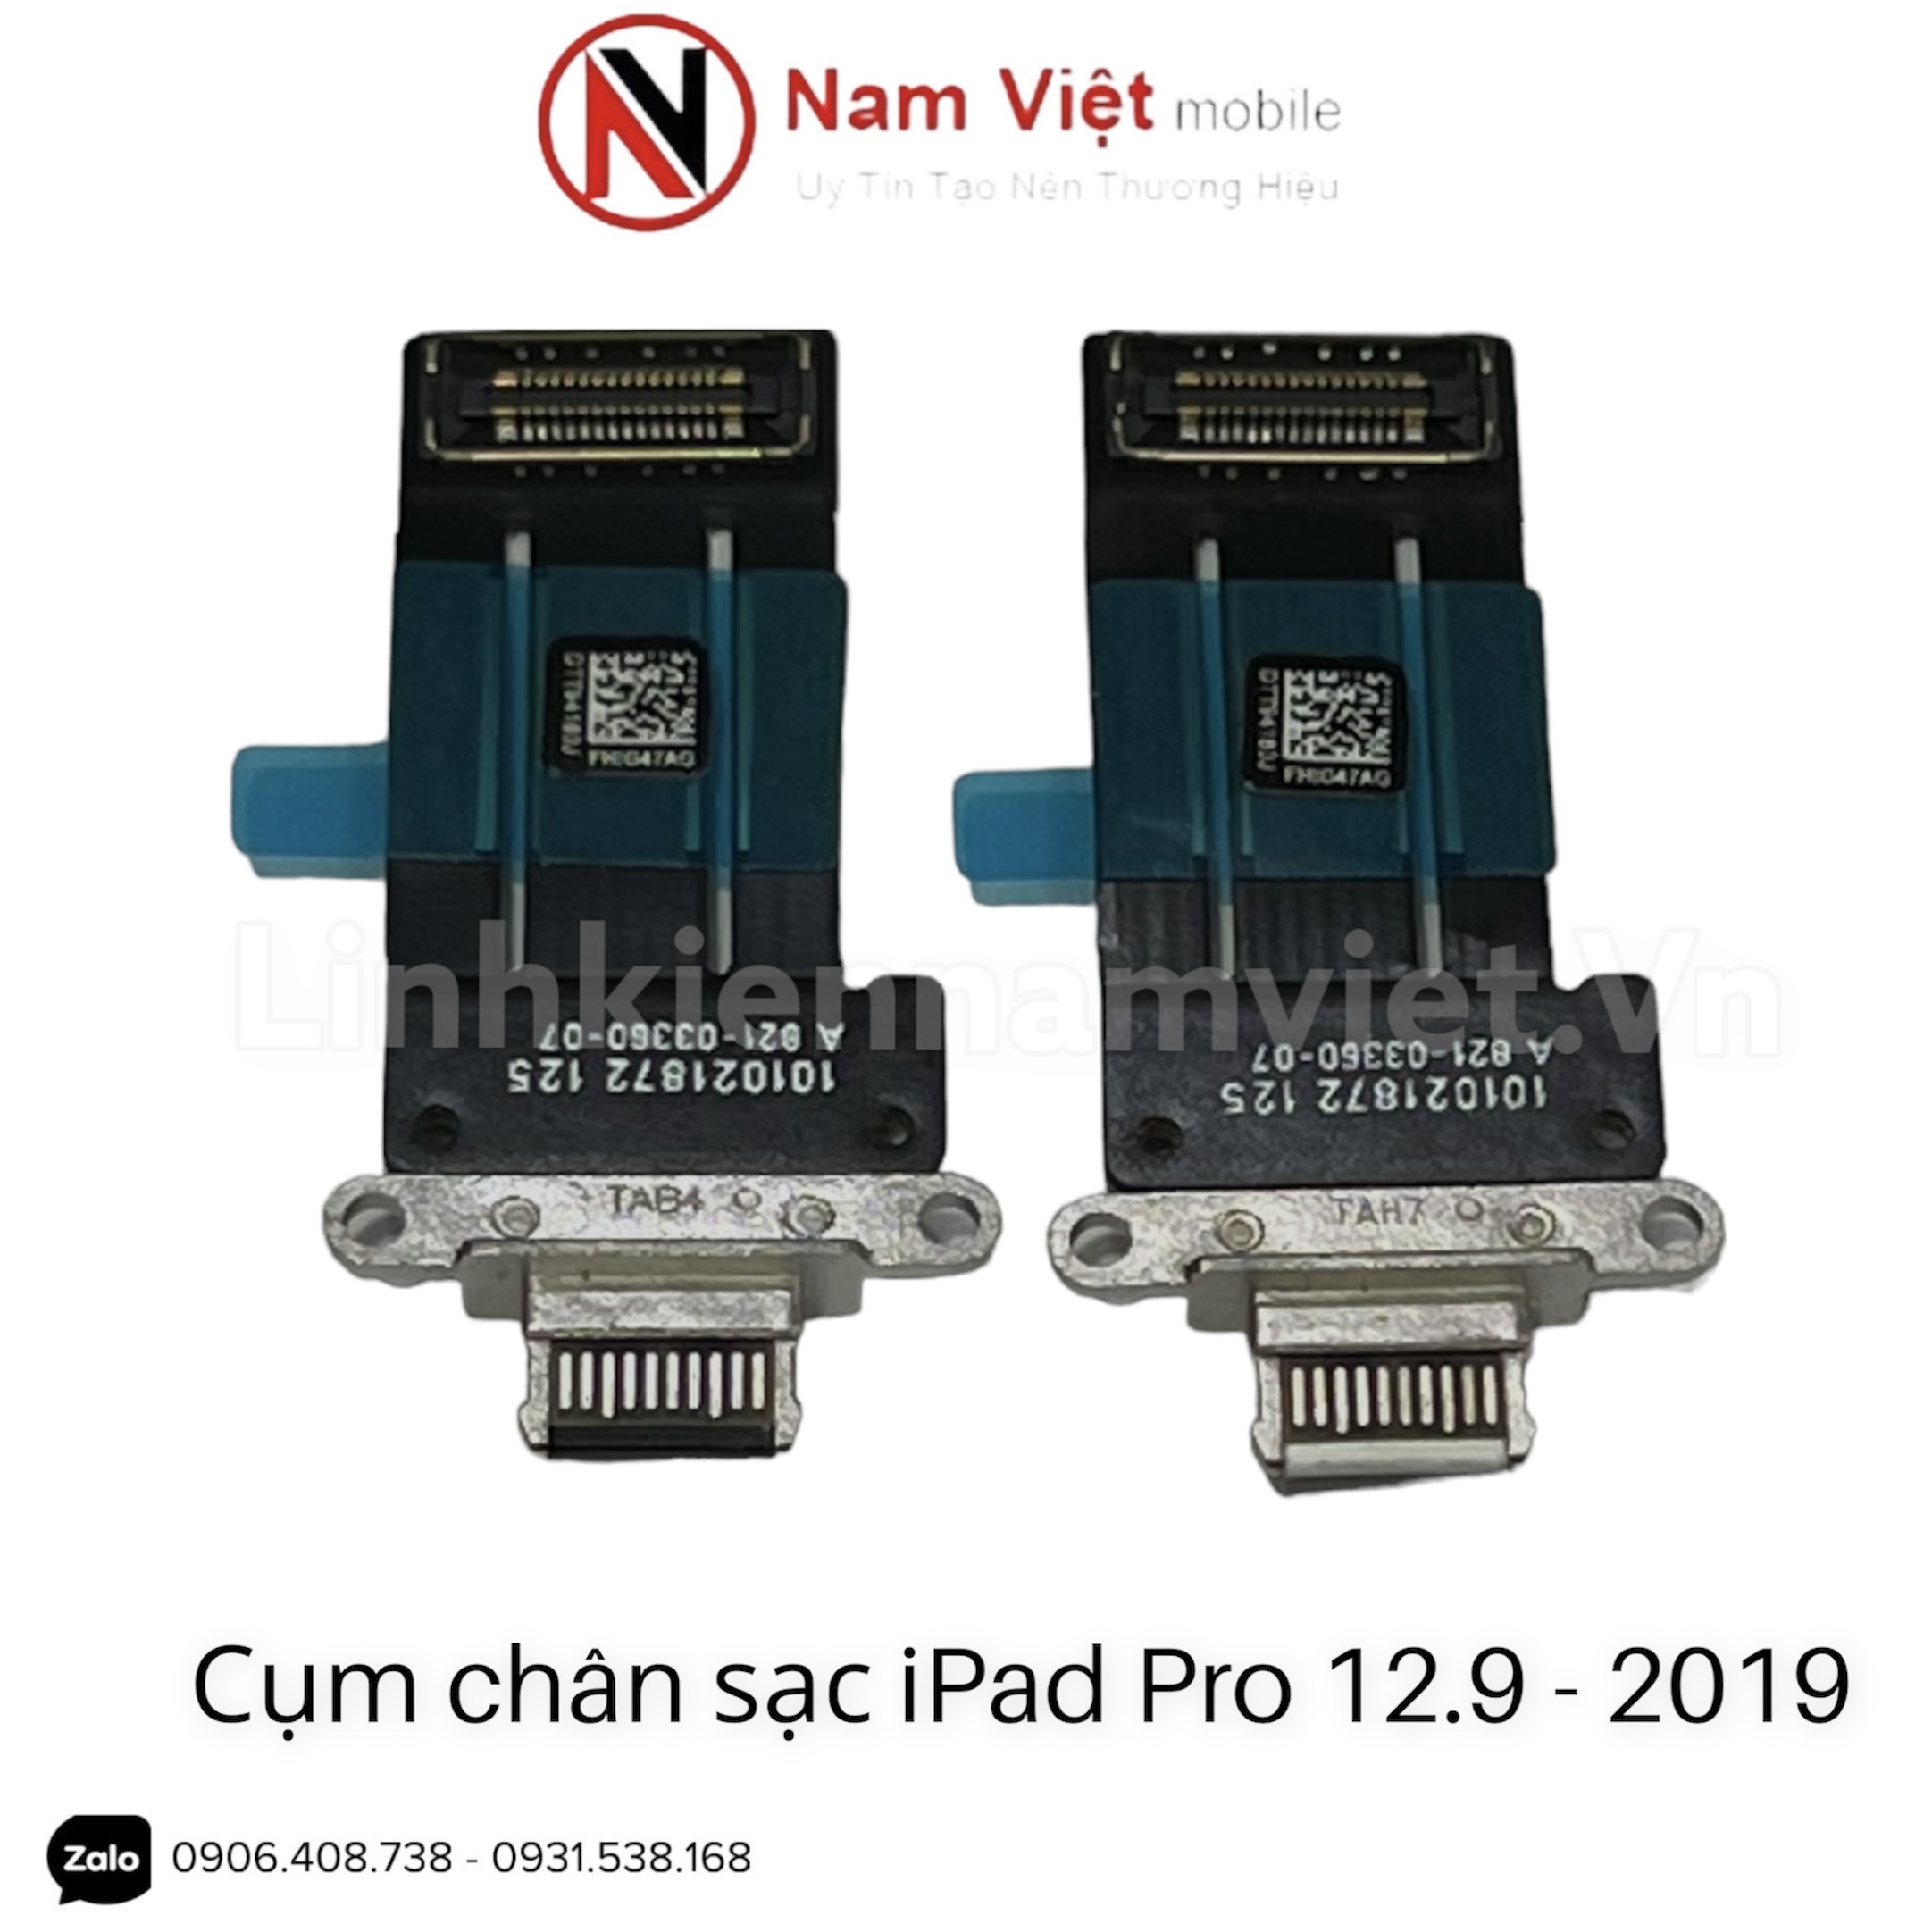 Cụm chân sạc iPad Pro 12.9 2019